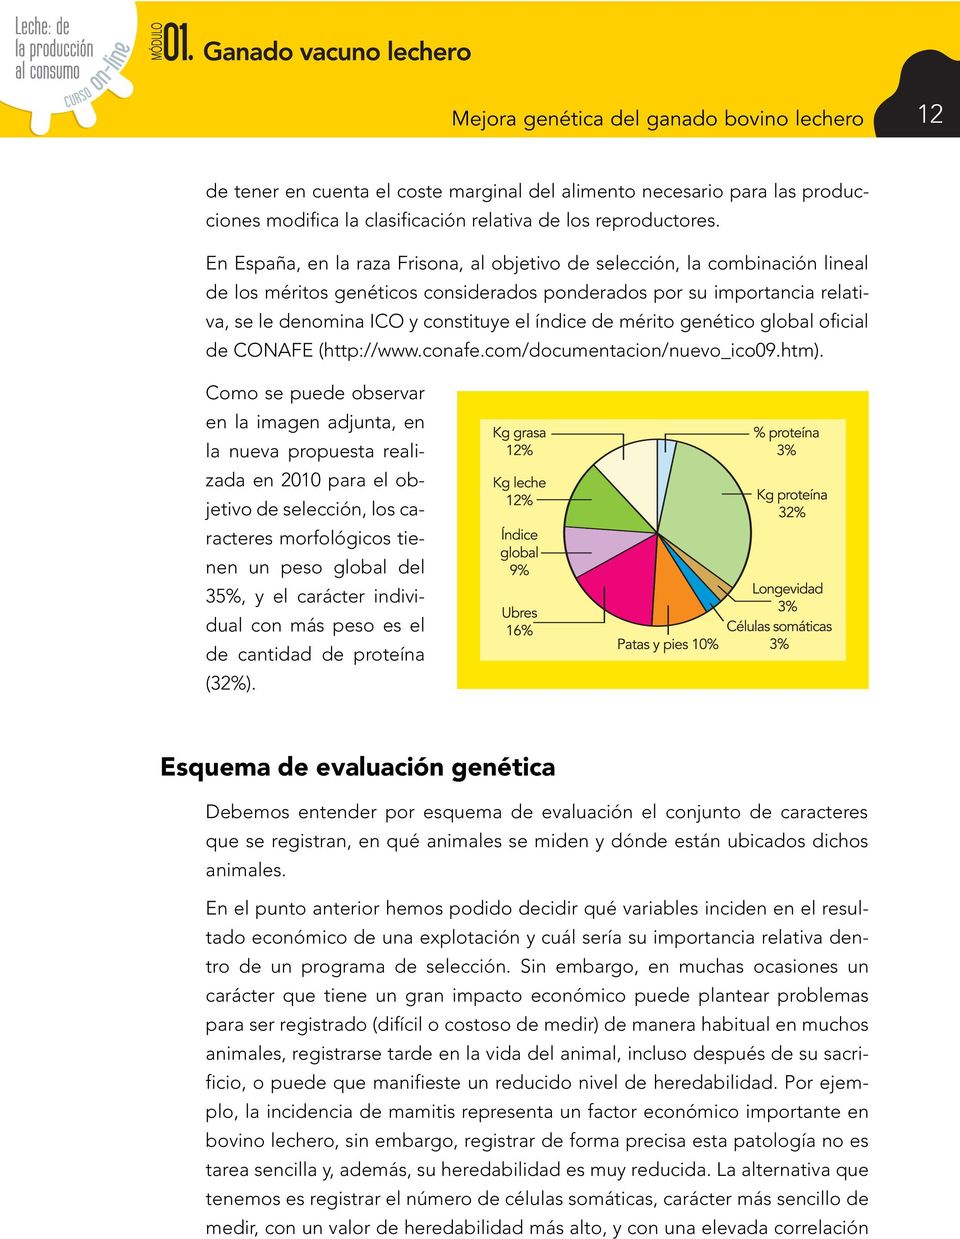 de mérito genético global oficial de CONAFE (http://www.conafe.com/documentacion/nuevo_ico09.htm).